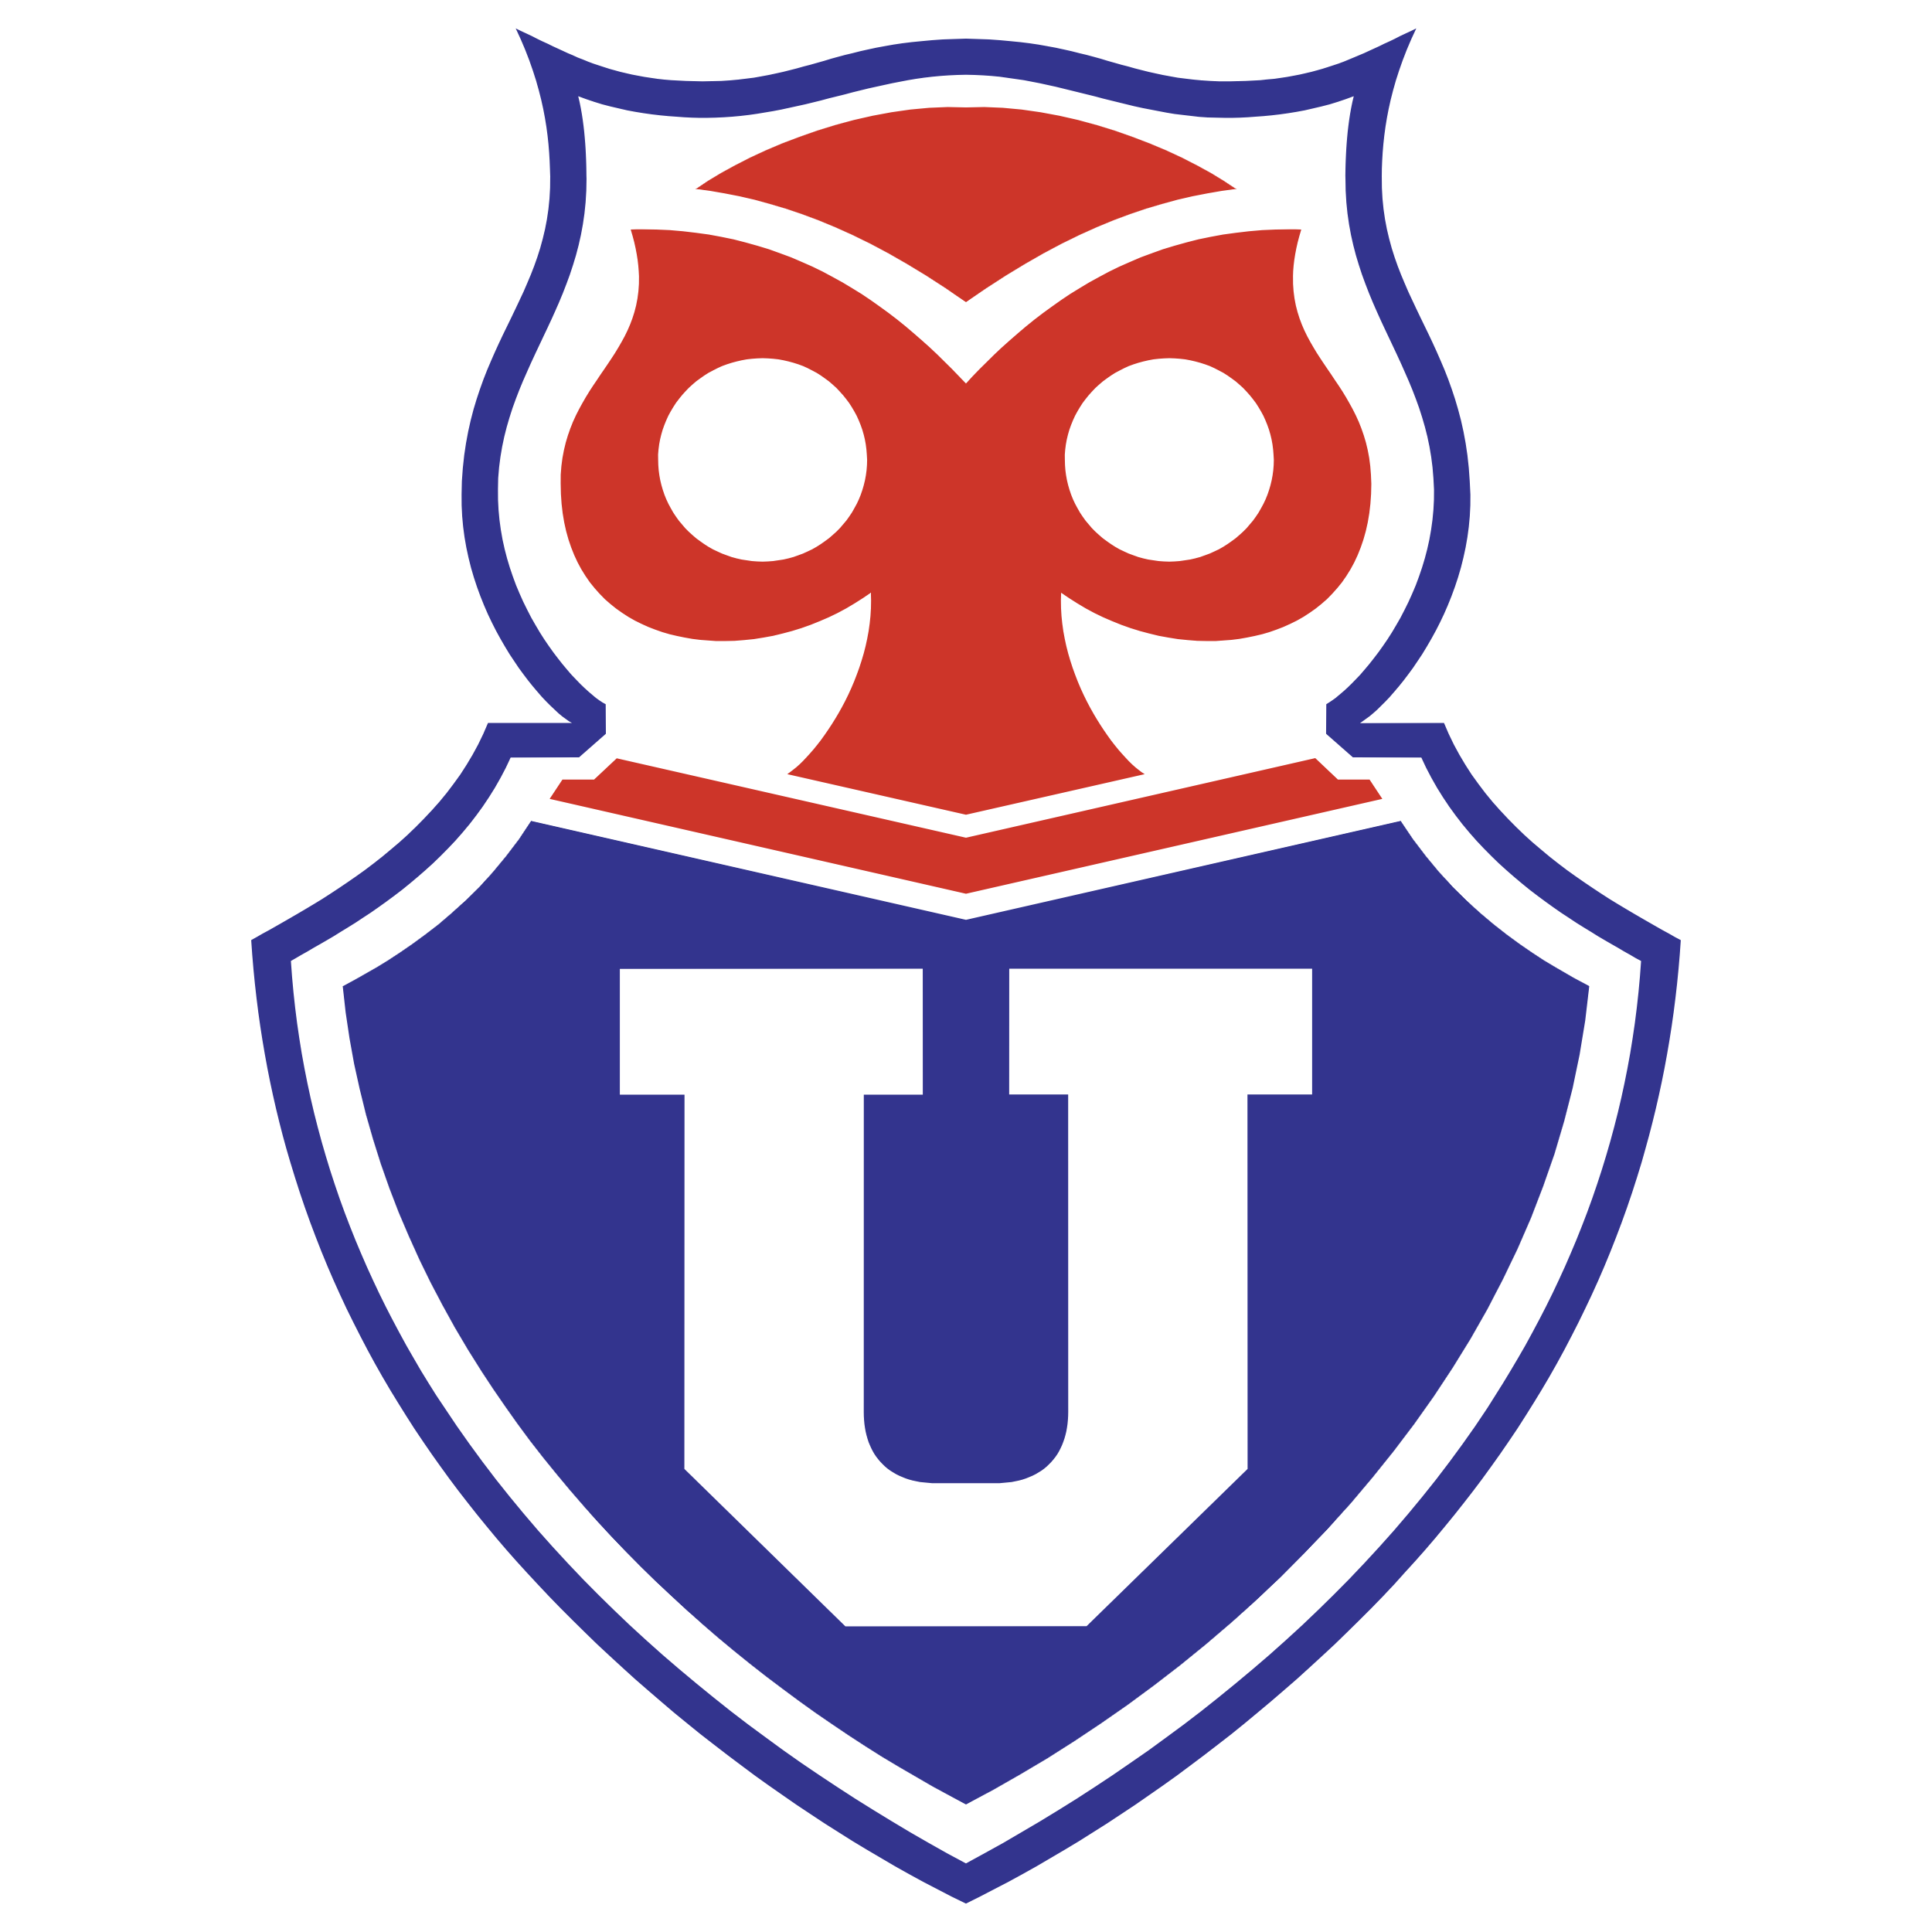 Universidad de Chile - Logos Download